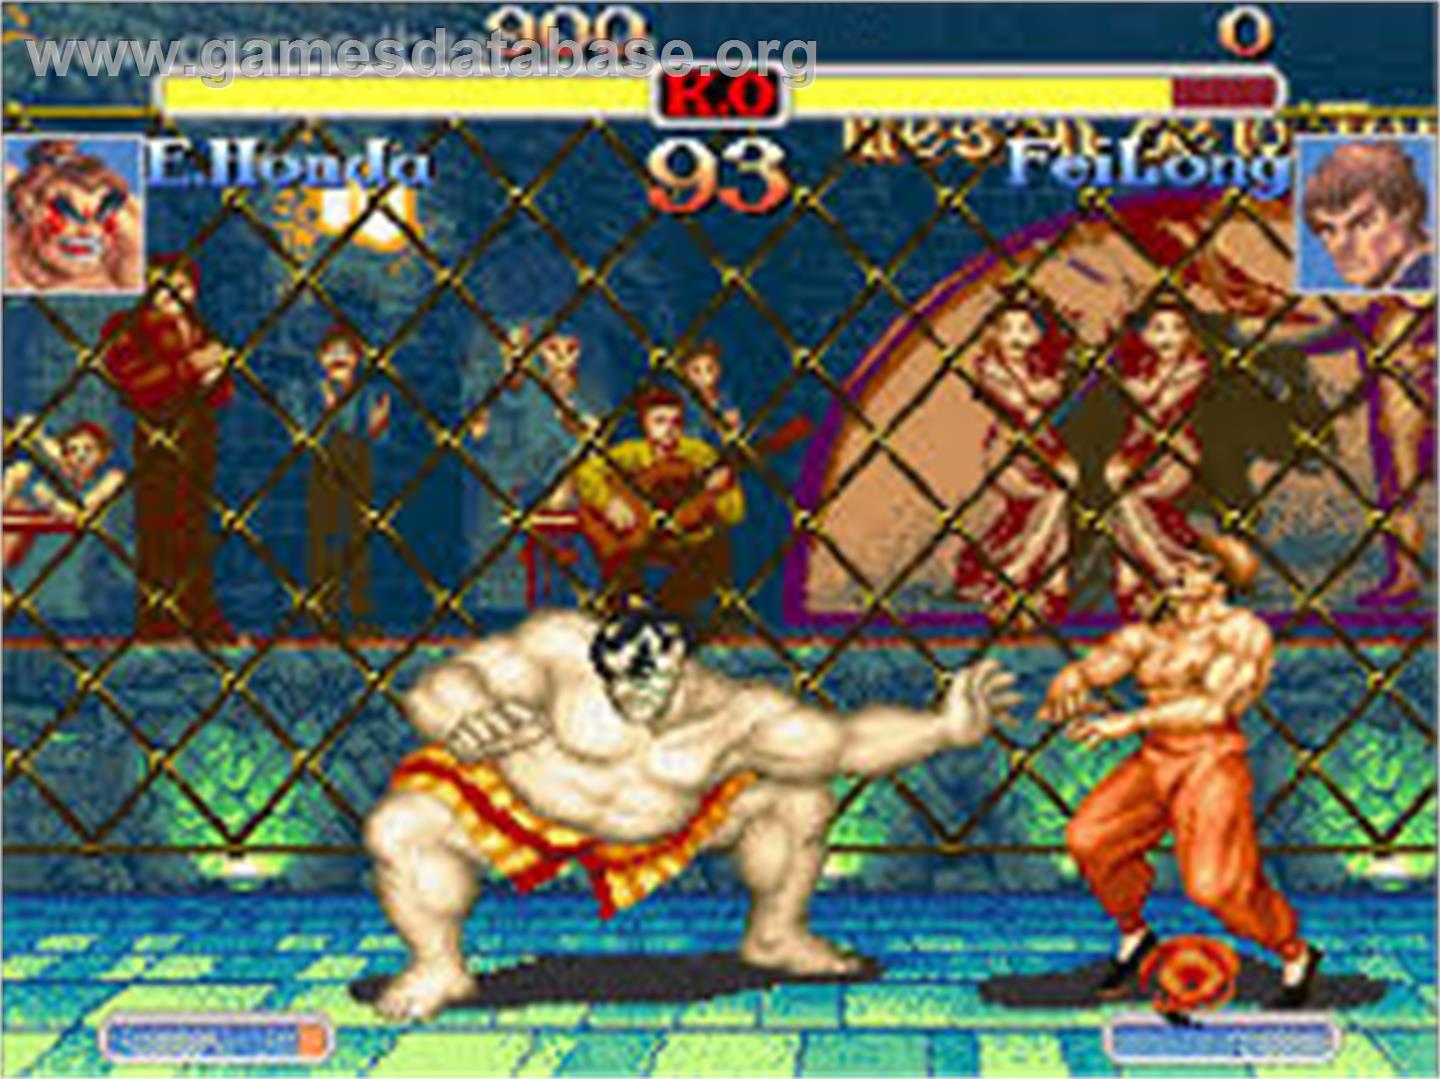 Super Street Fighter II Turbo - Commodore Amiga - Artwork - In Game